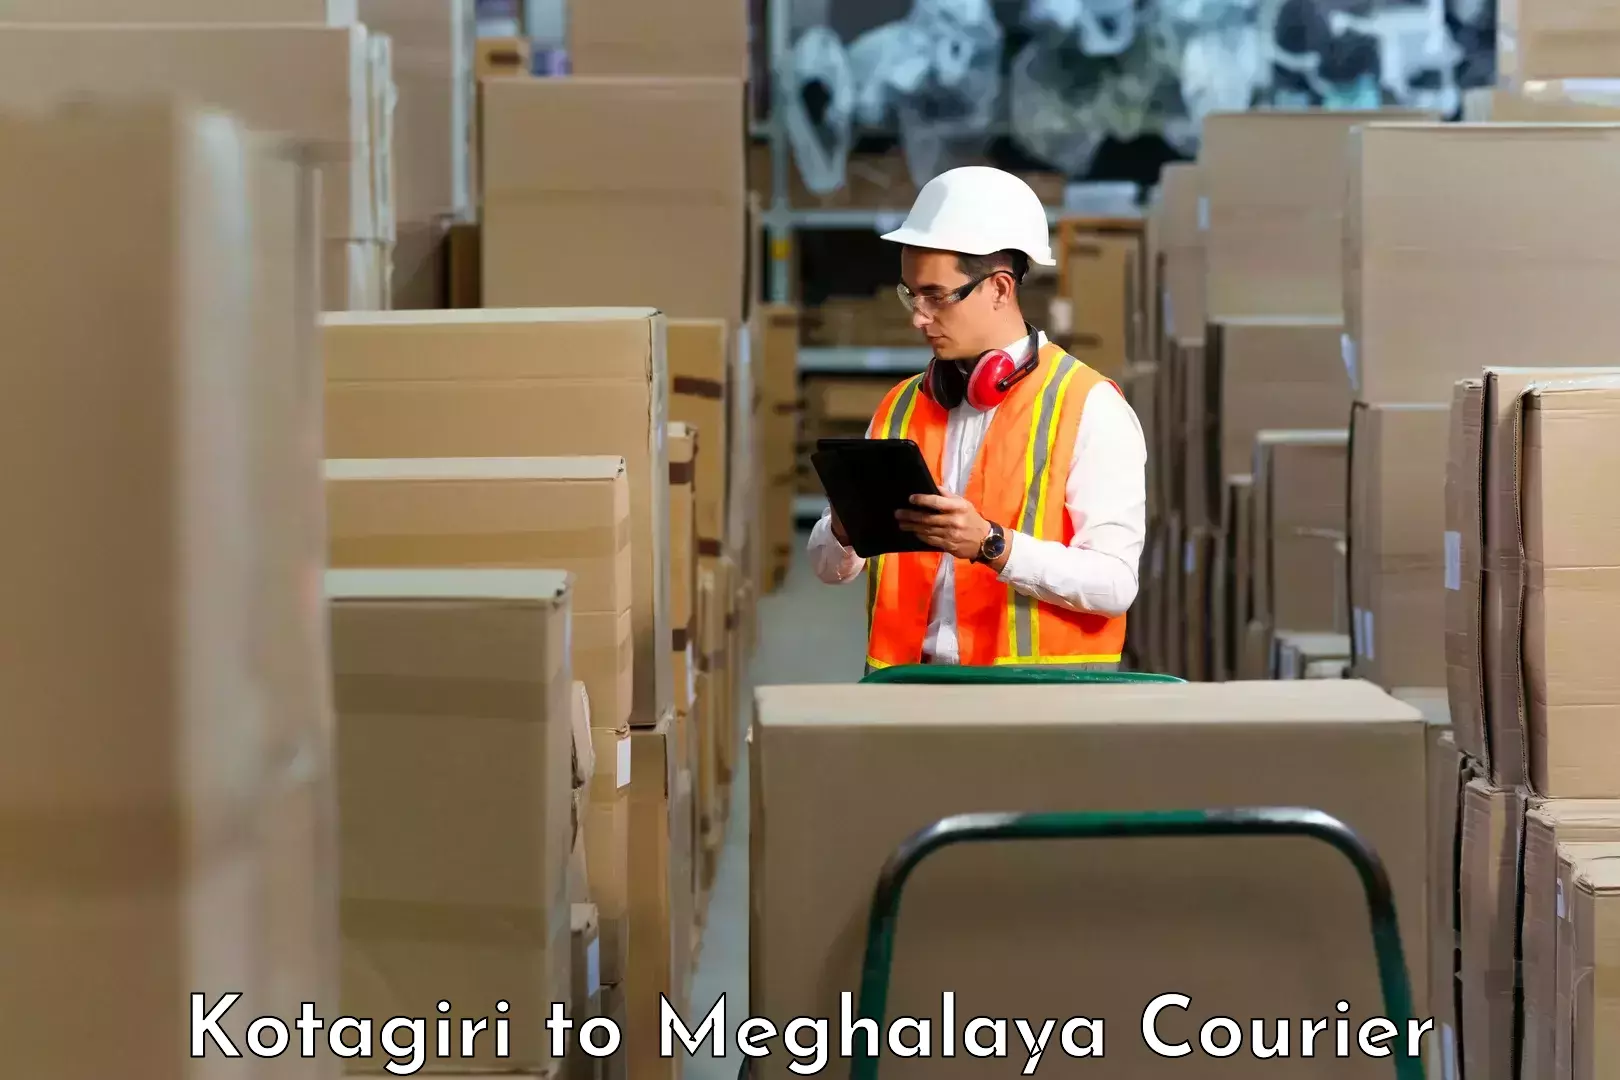 Affordable parcel service Kotagiri to Umsaw